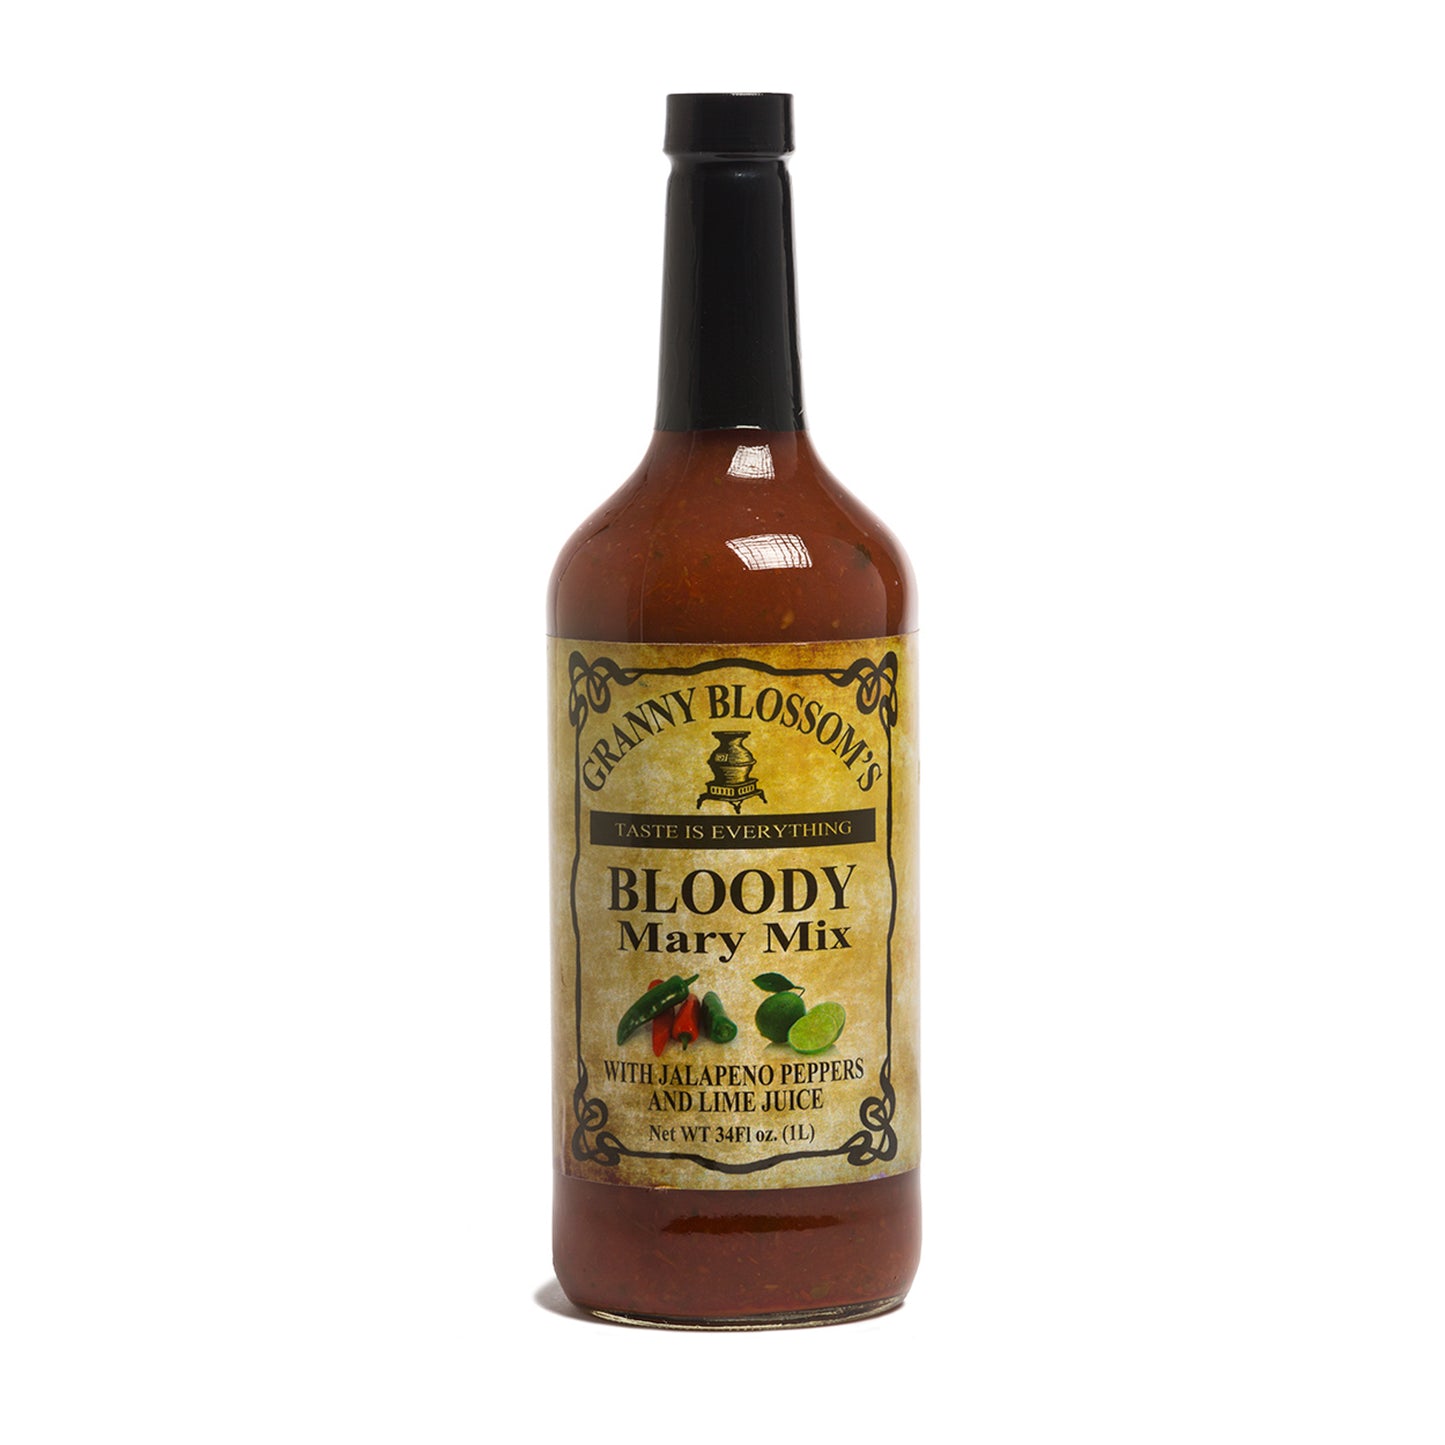 Granny Blossom's Bloody Mary Mix